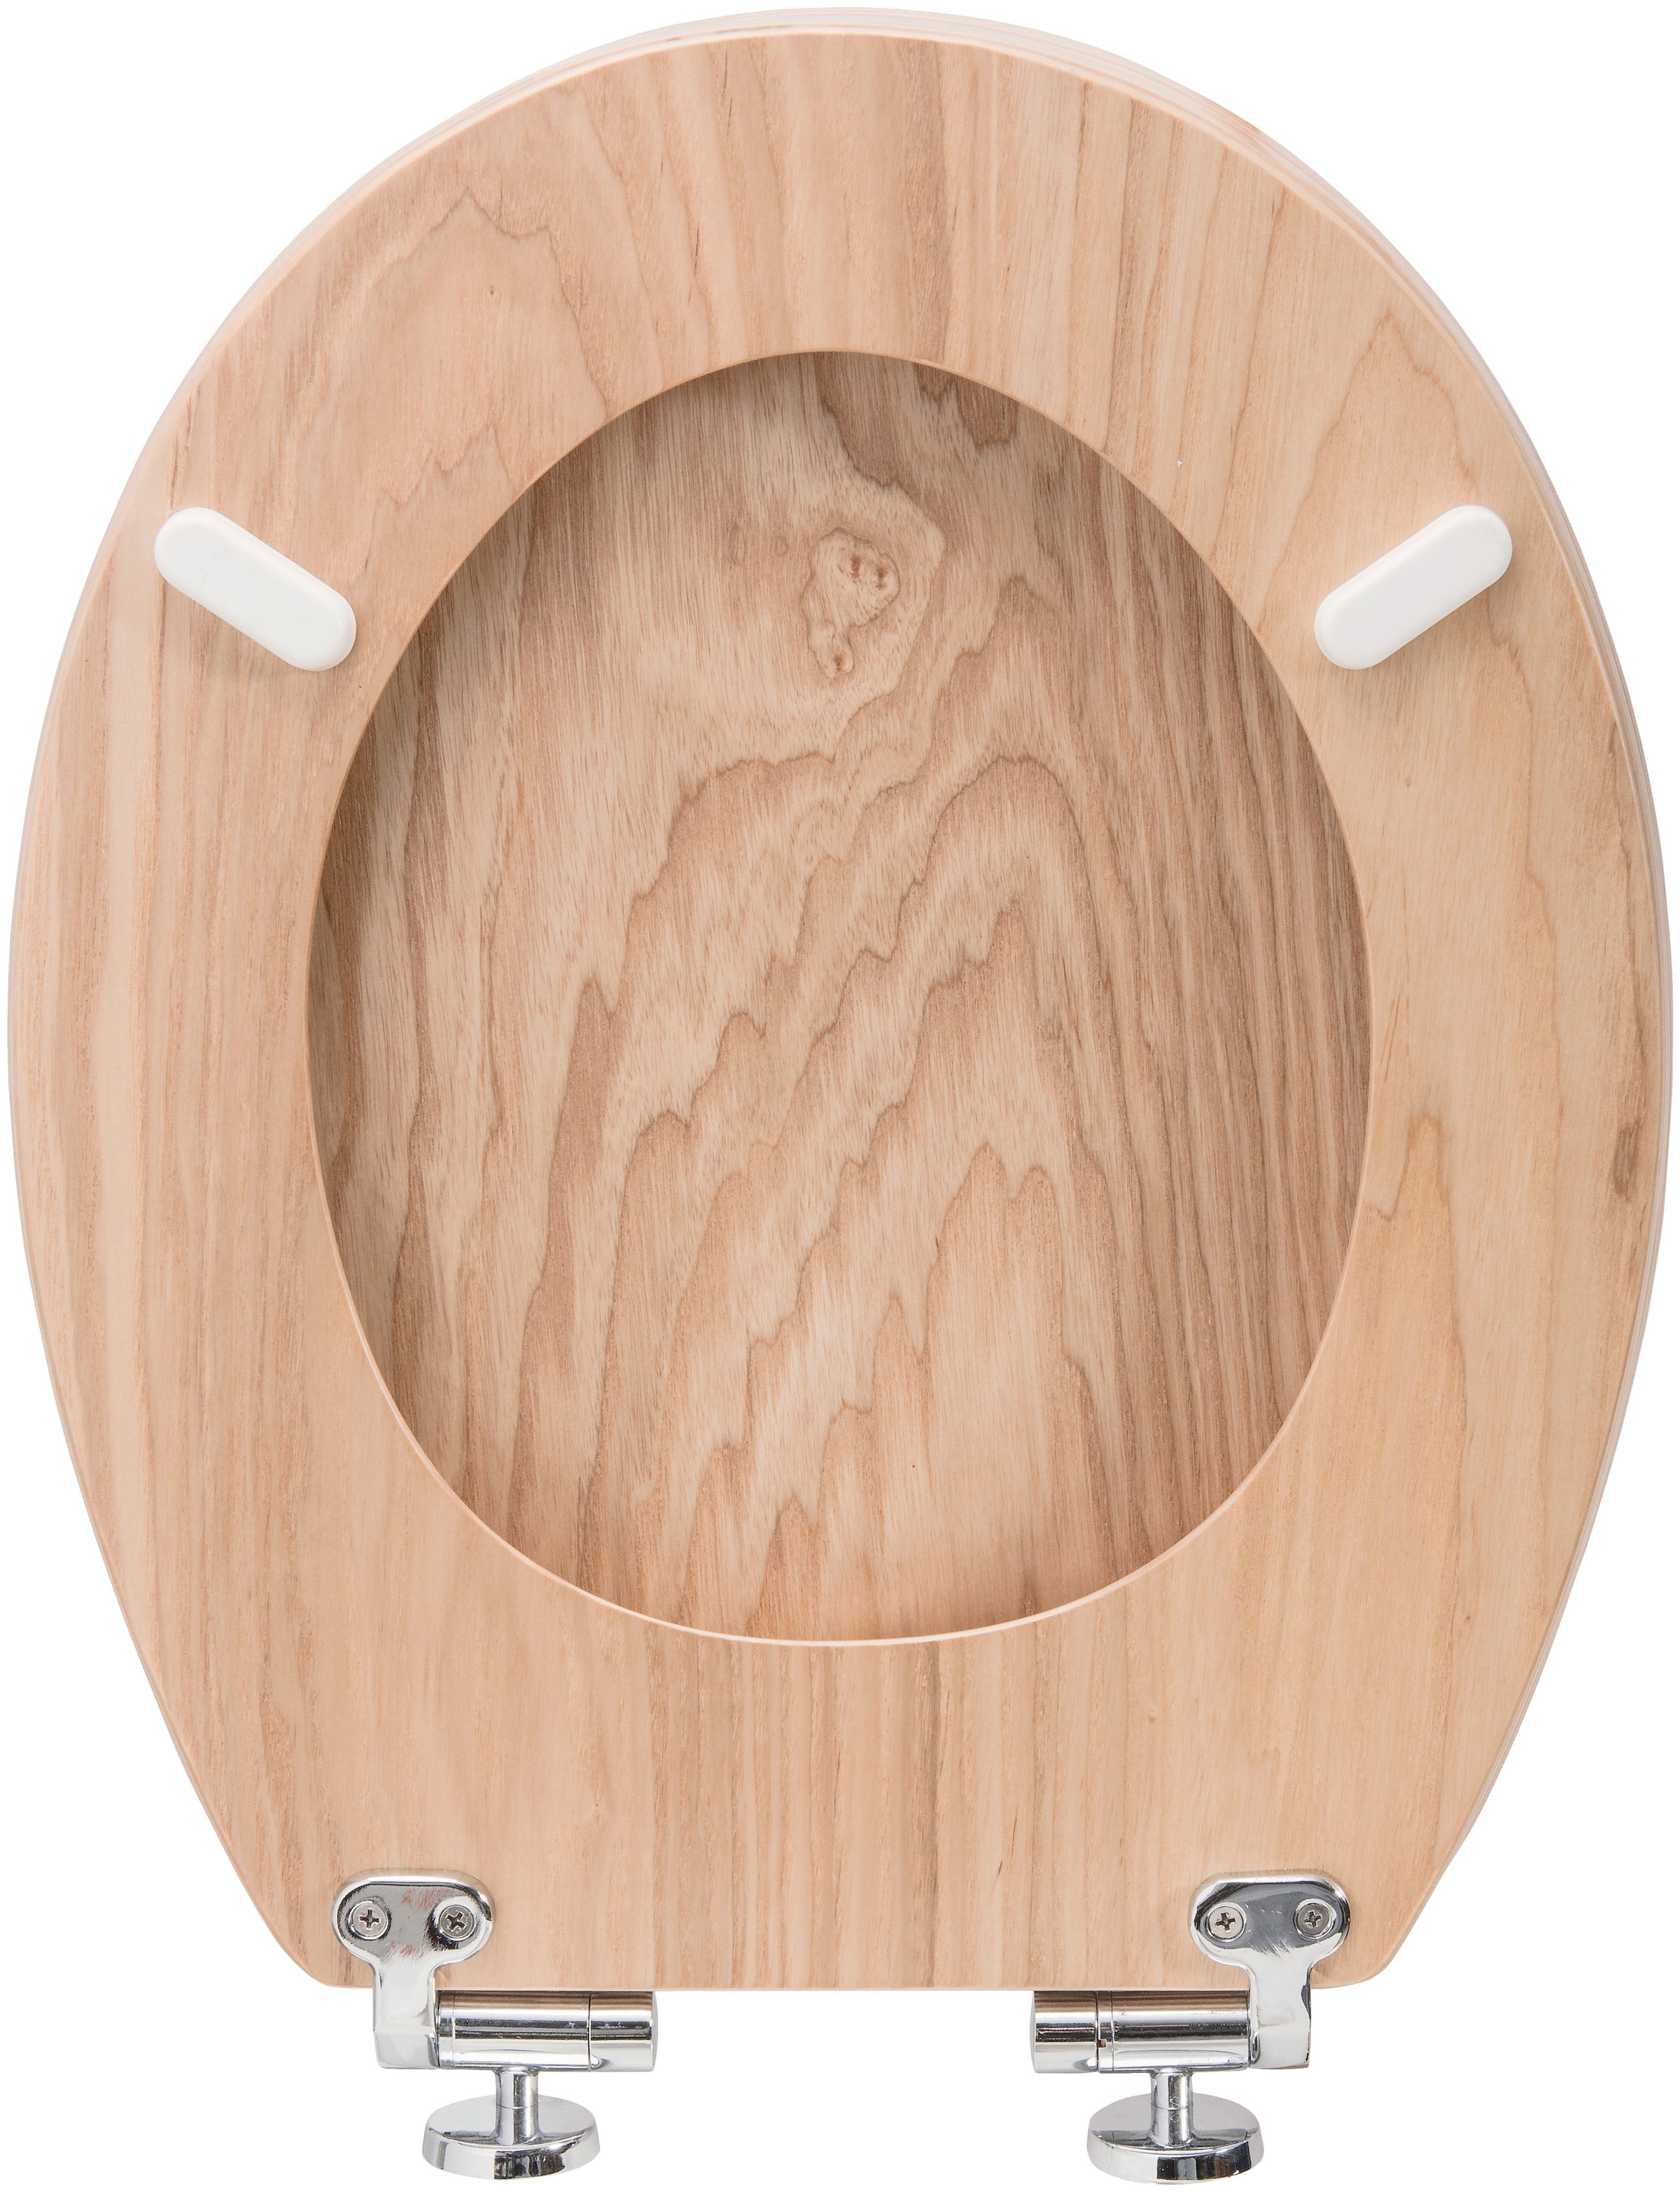 CORNAT WC-Sitz »Hochwertiges Echtholz - Eiche - Komfortables Sitzgefühl«, Absenkautomatik - Edle Holz-Optik passt in jedes Badezimmer